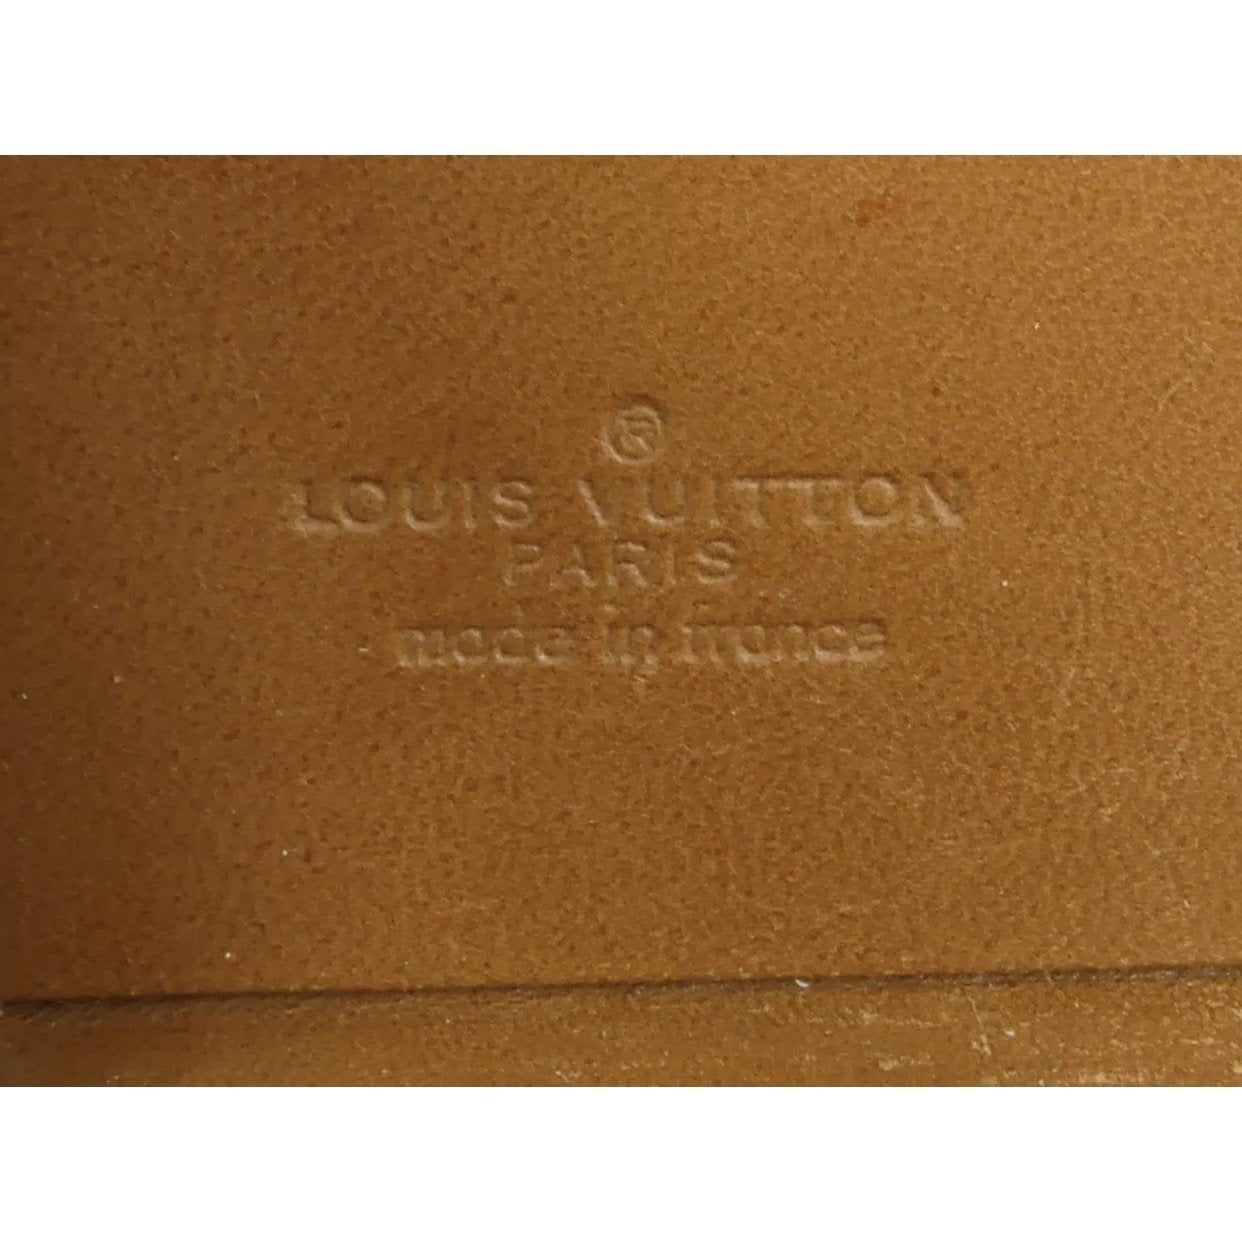 Louis Vuitton, Bags, Auth Louis Vuitton Lv Monogram Canvas Business  Ambassadeur Attache Portfolio Bag